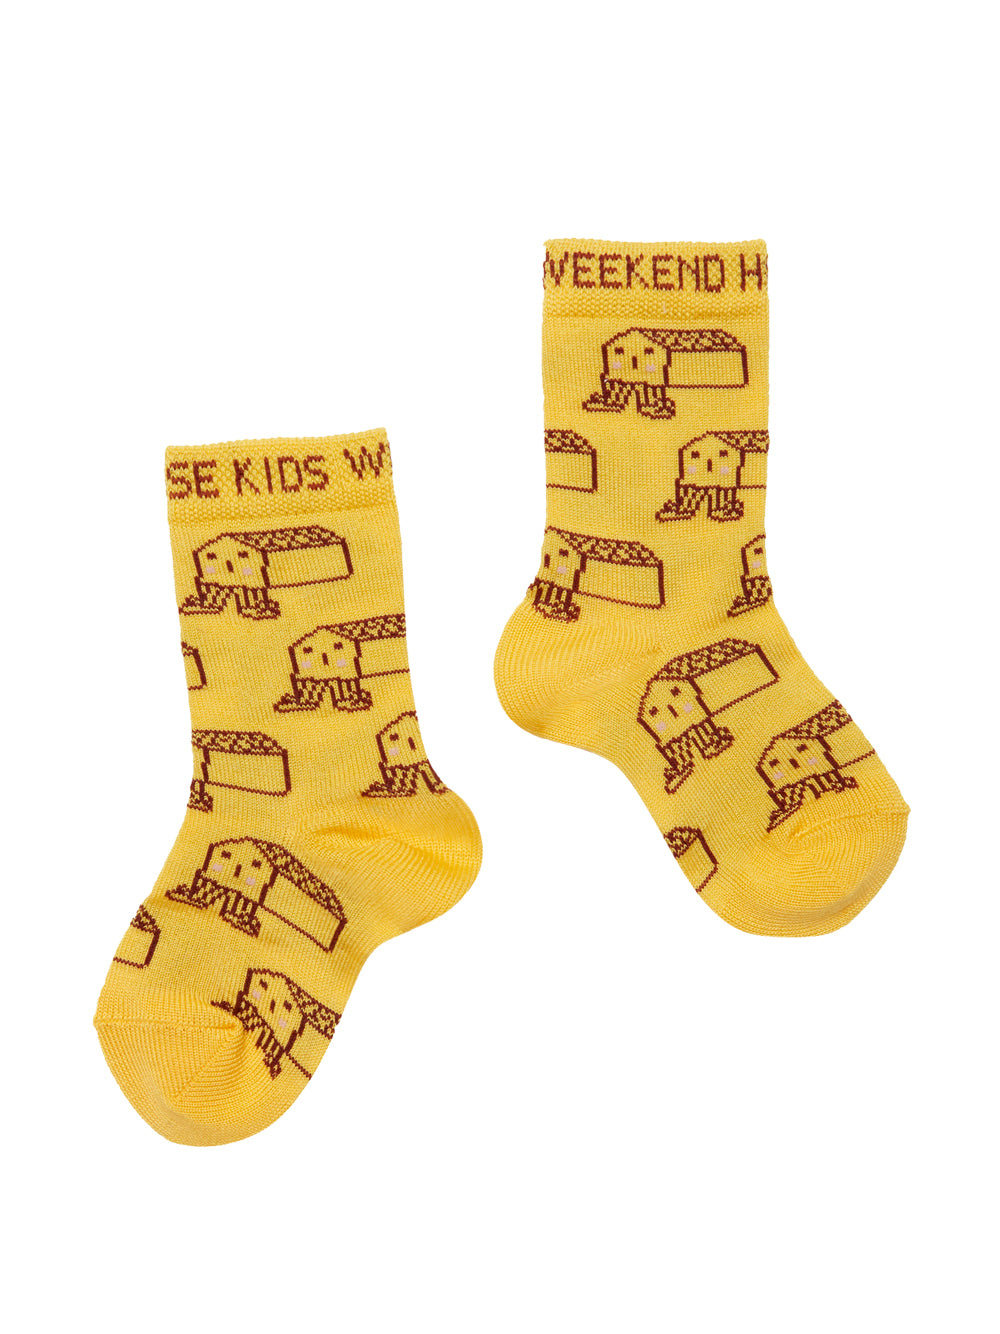 Happy House Socks